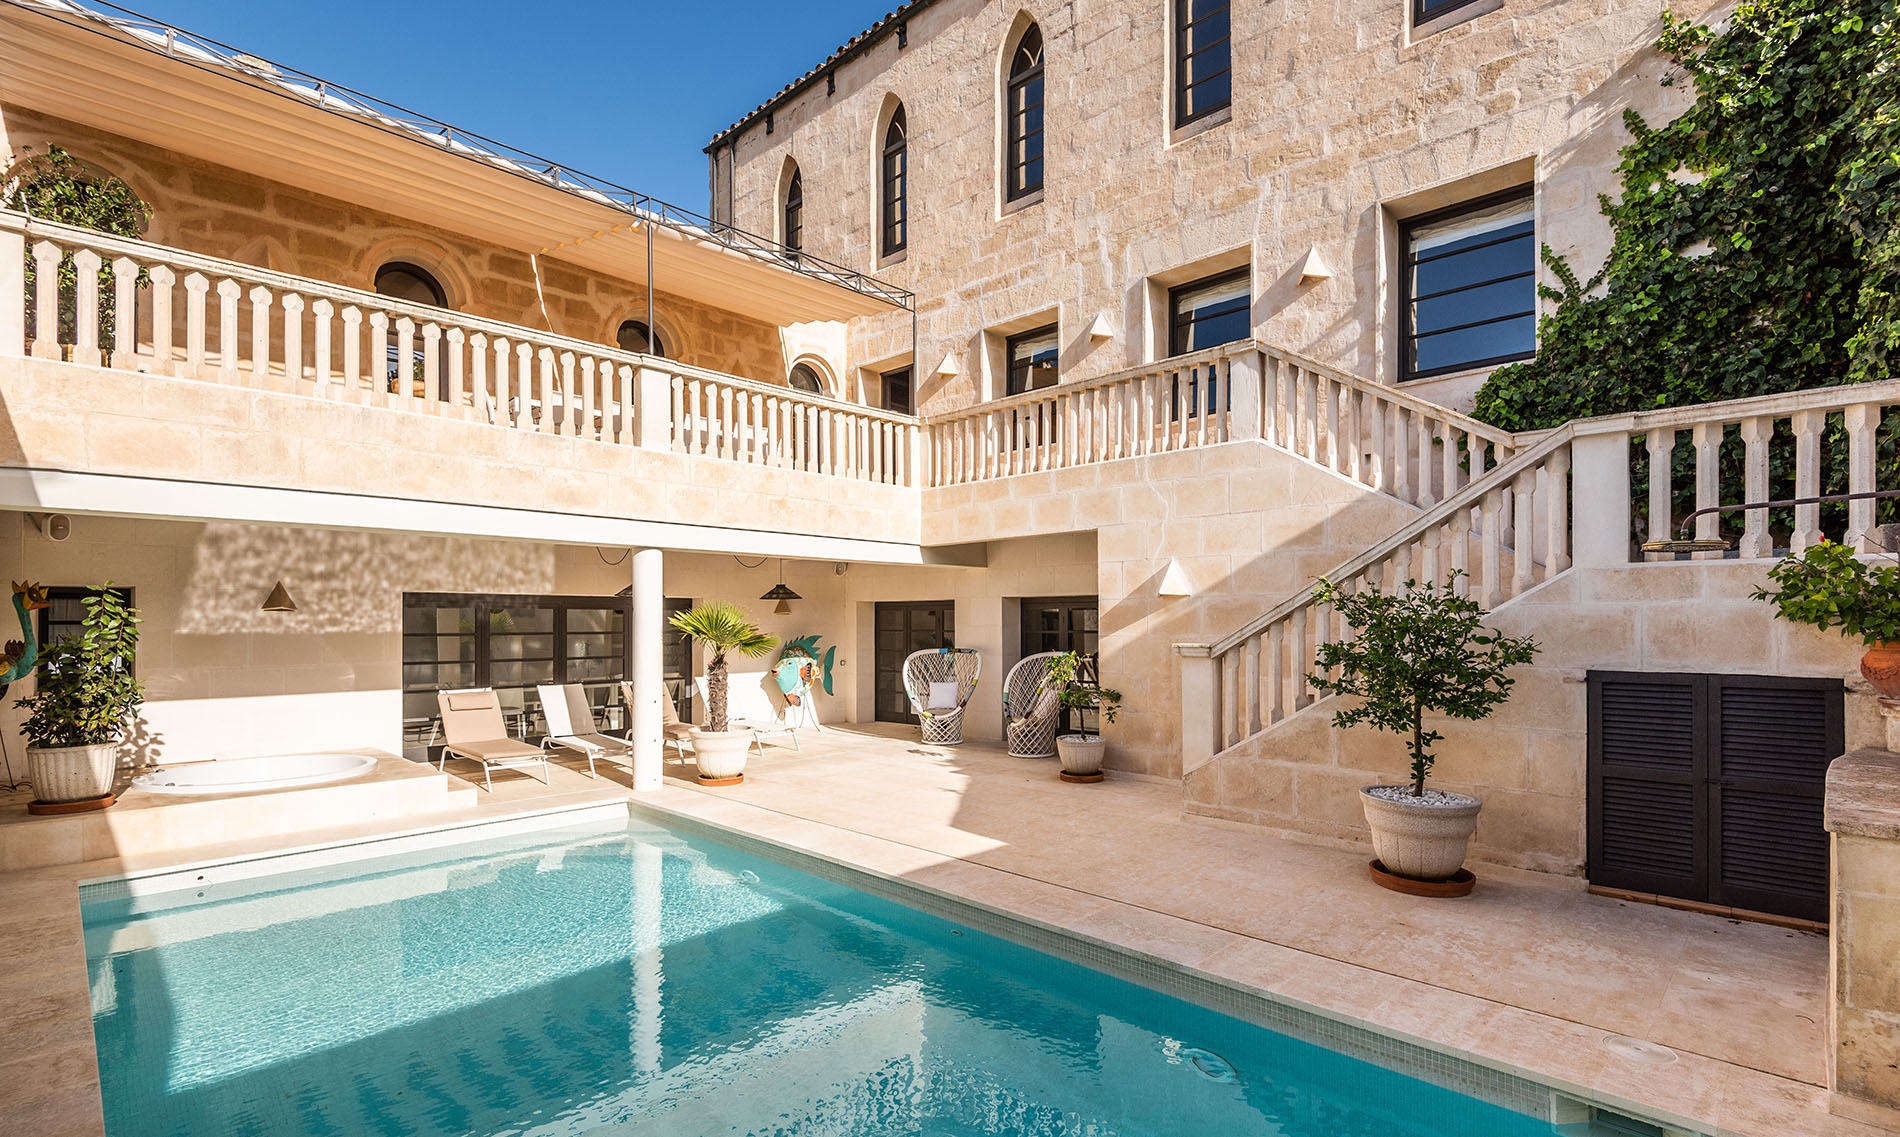 Vacances en villa de luxe à Minorque